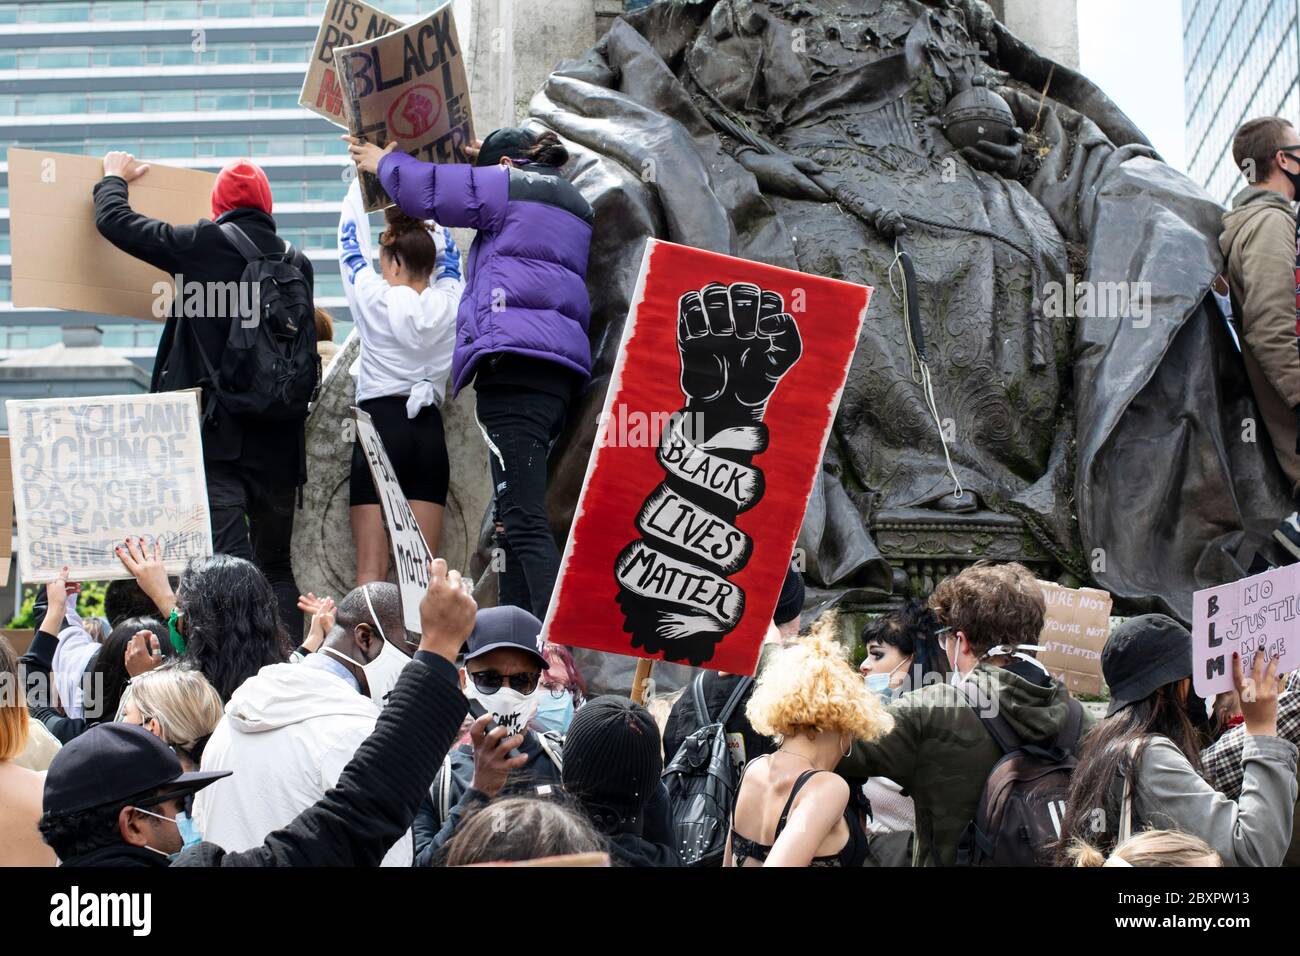 Schwarze Leben sind wichtig Protest, Manchester UK. Demonstranten auf dem Sockel der Königin Victoria Statue mit rotem Plakat und schwarzer Faust Symbol Stockfoto